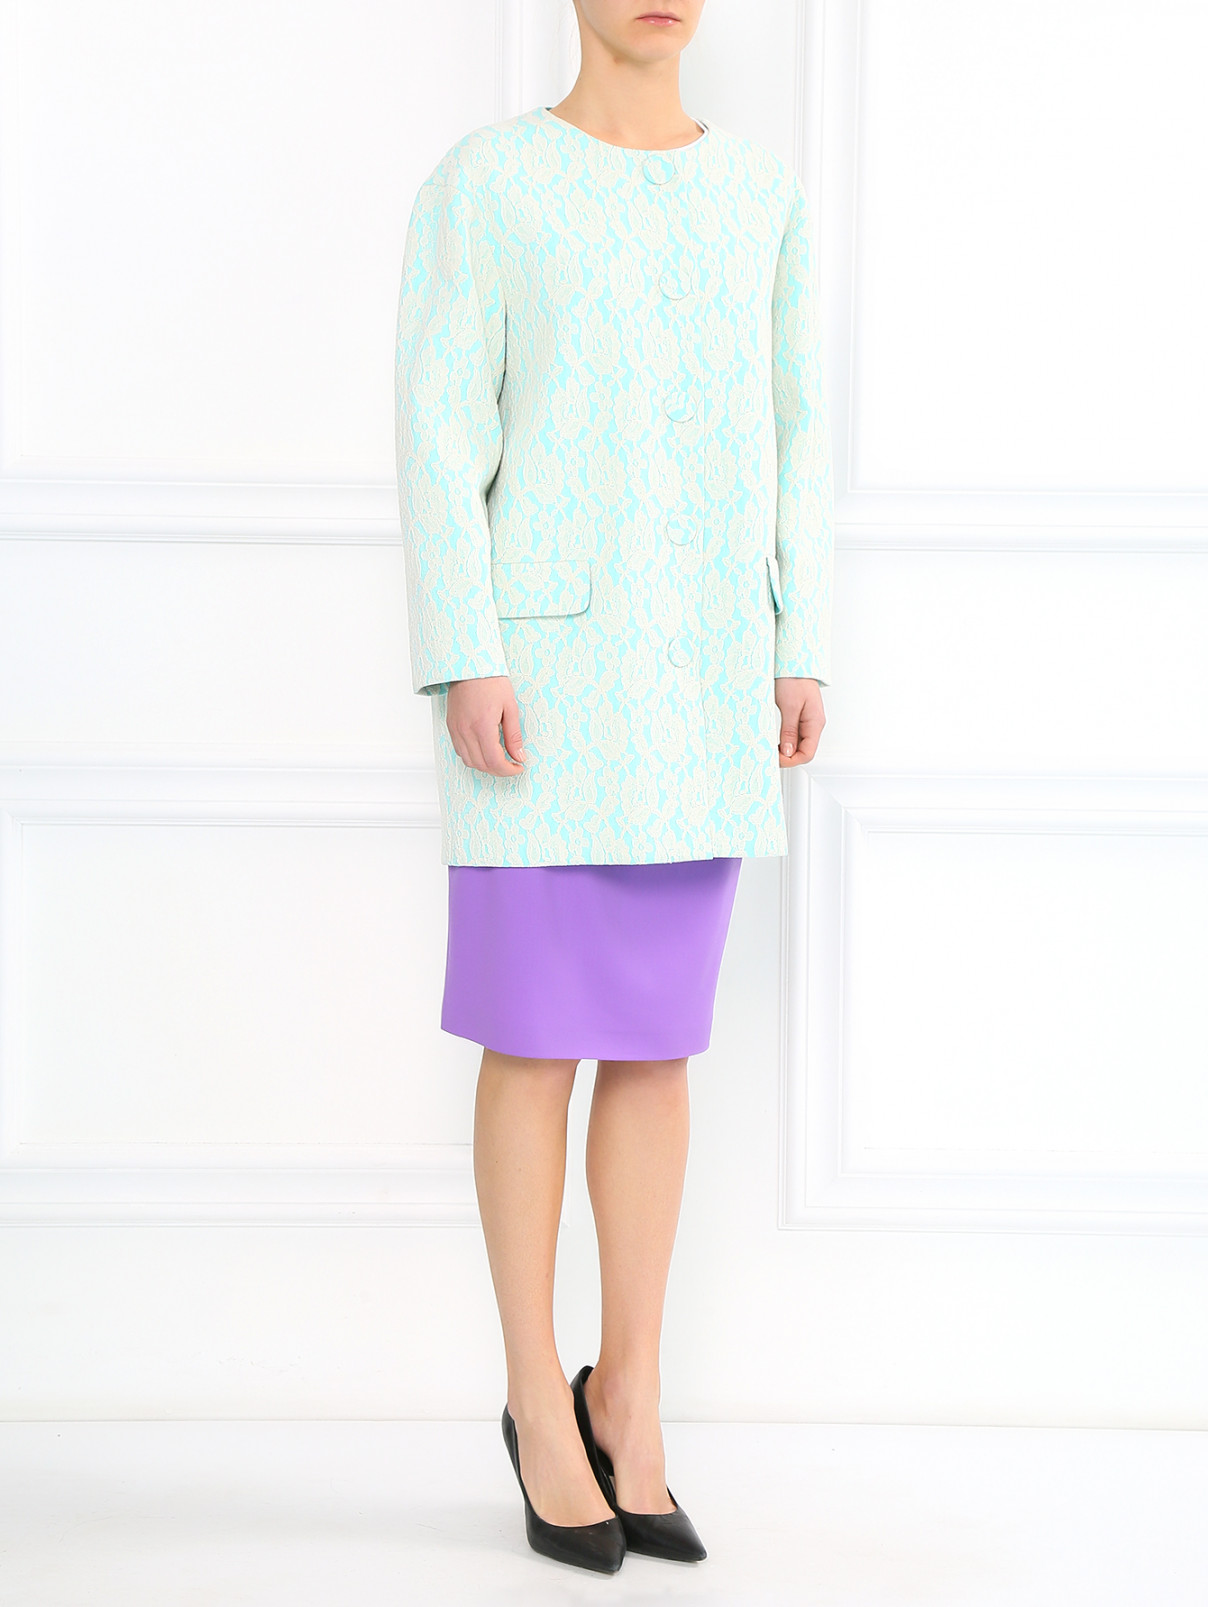 Пальто декорированное кружевом Moschino Boutique  –  Модель Общий вид  – Цвет:  Зеленый